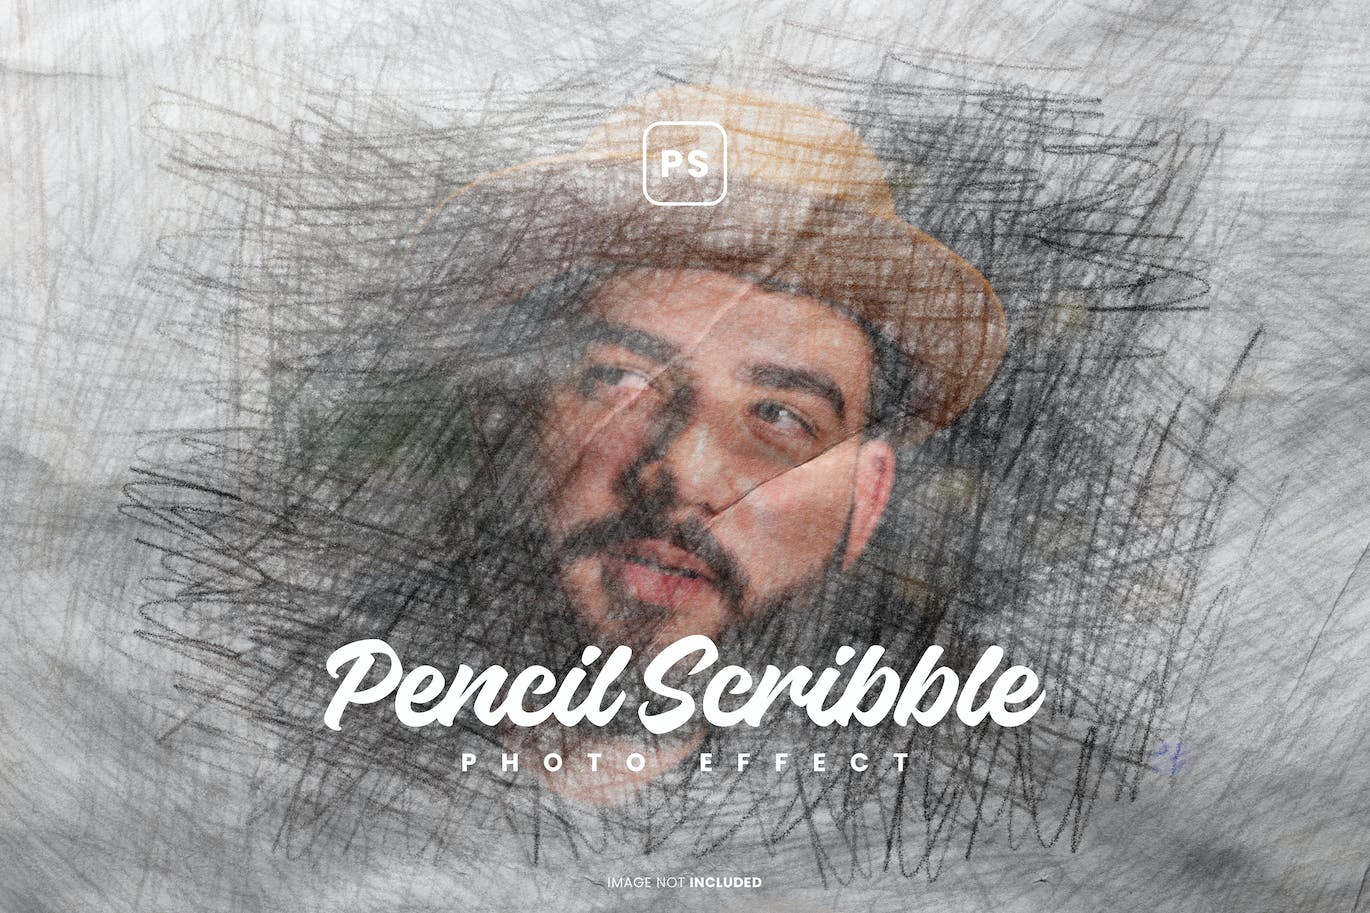 铅笔涂鸦照片特效PS图层样式 Pencil Scribble Photo Effect 插件预设 第1张